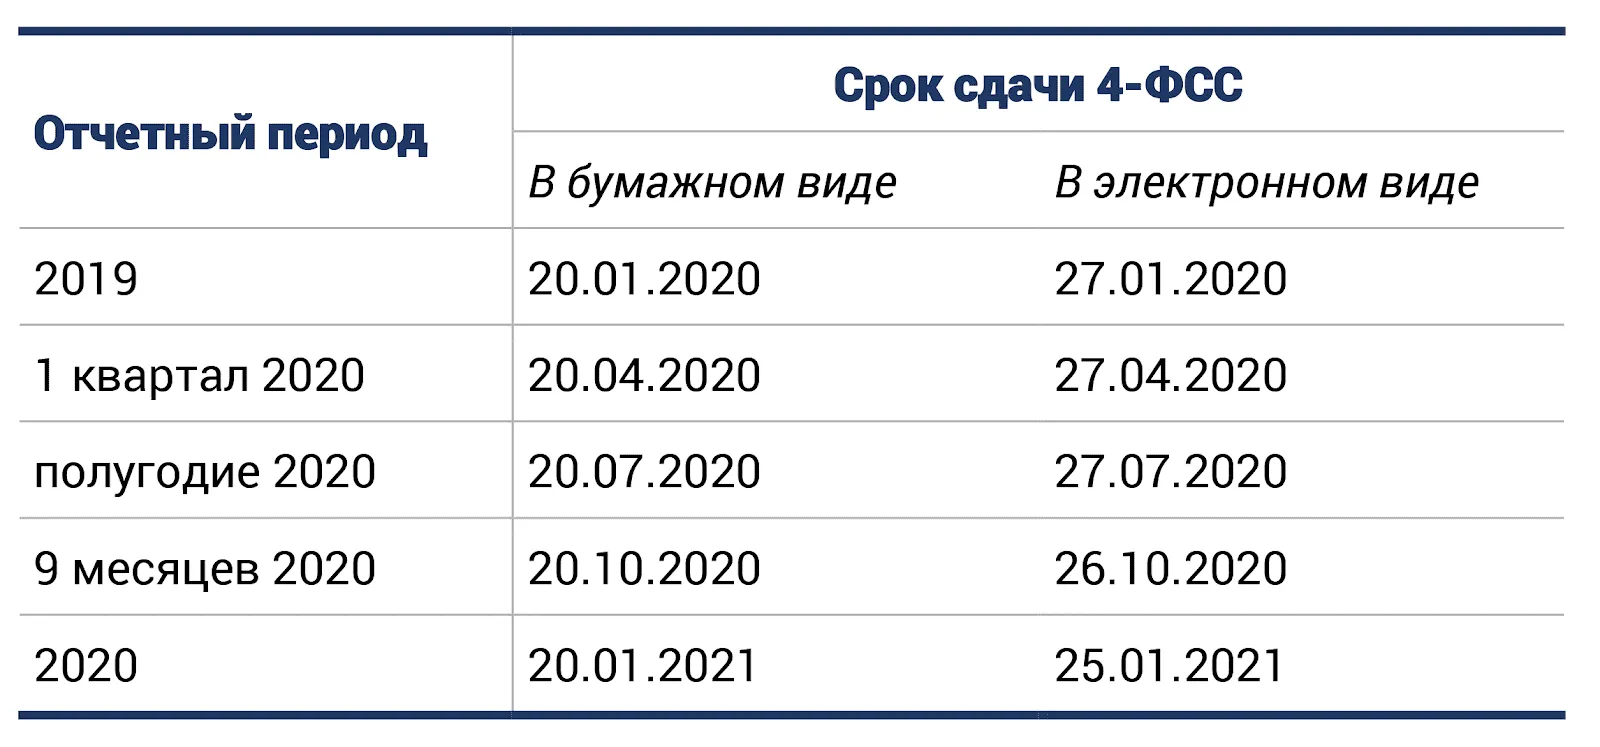 Ефс за 1 квартал 2024 срок сдачи. 4-ФСС сроки сдачи в 2022 году. Сроки сдачи ФСС В 2020. ФСС сроки сдачи в 2022 году. Сроки сдачи отчетности 4 ФСС.